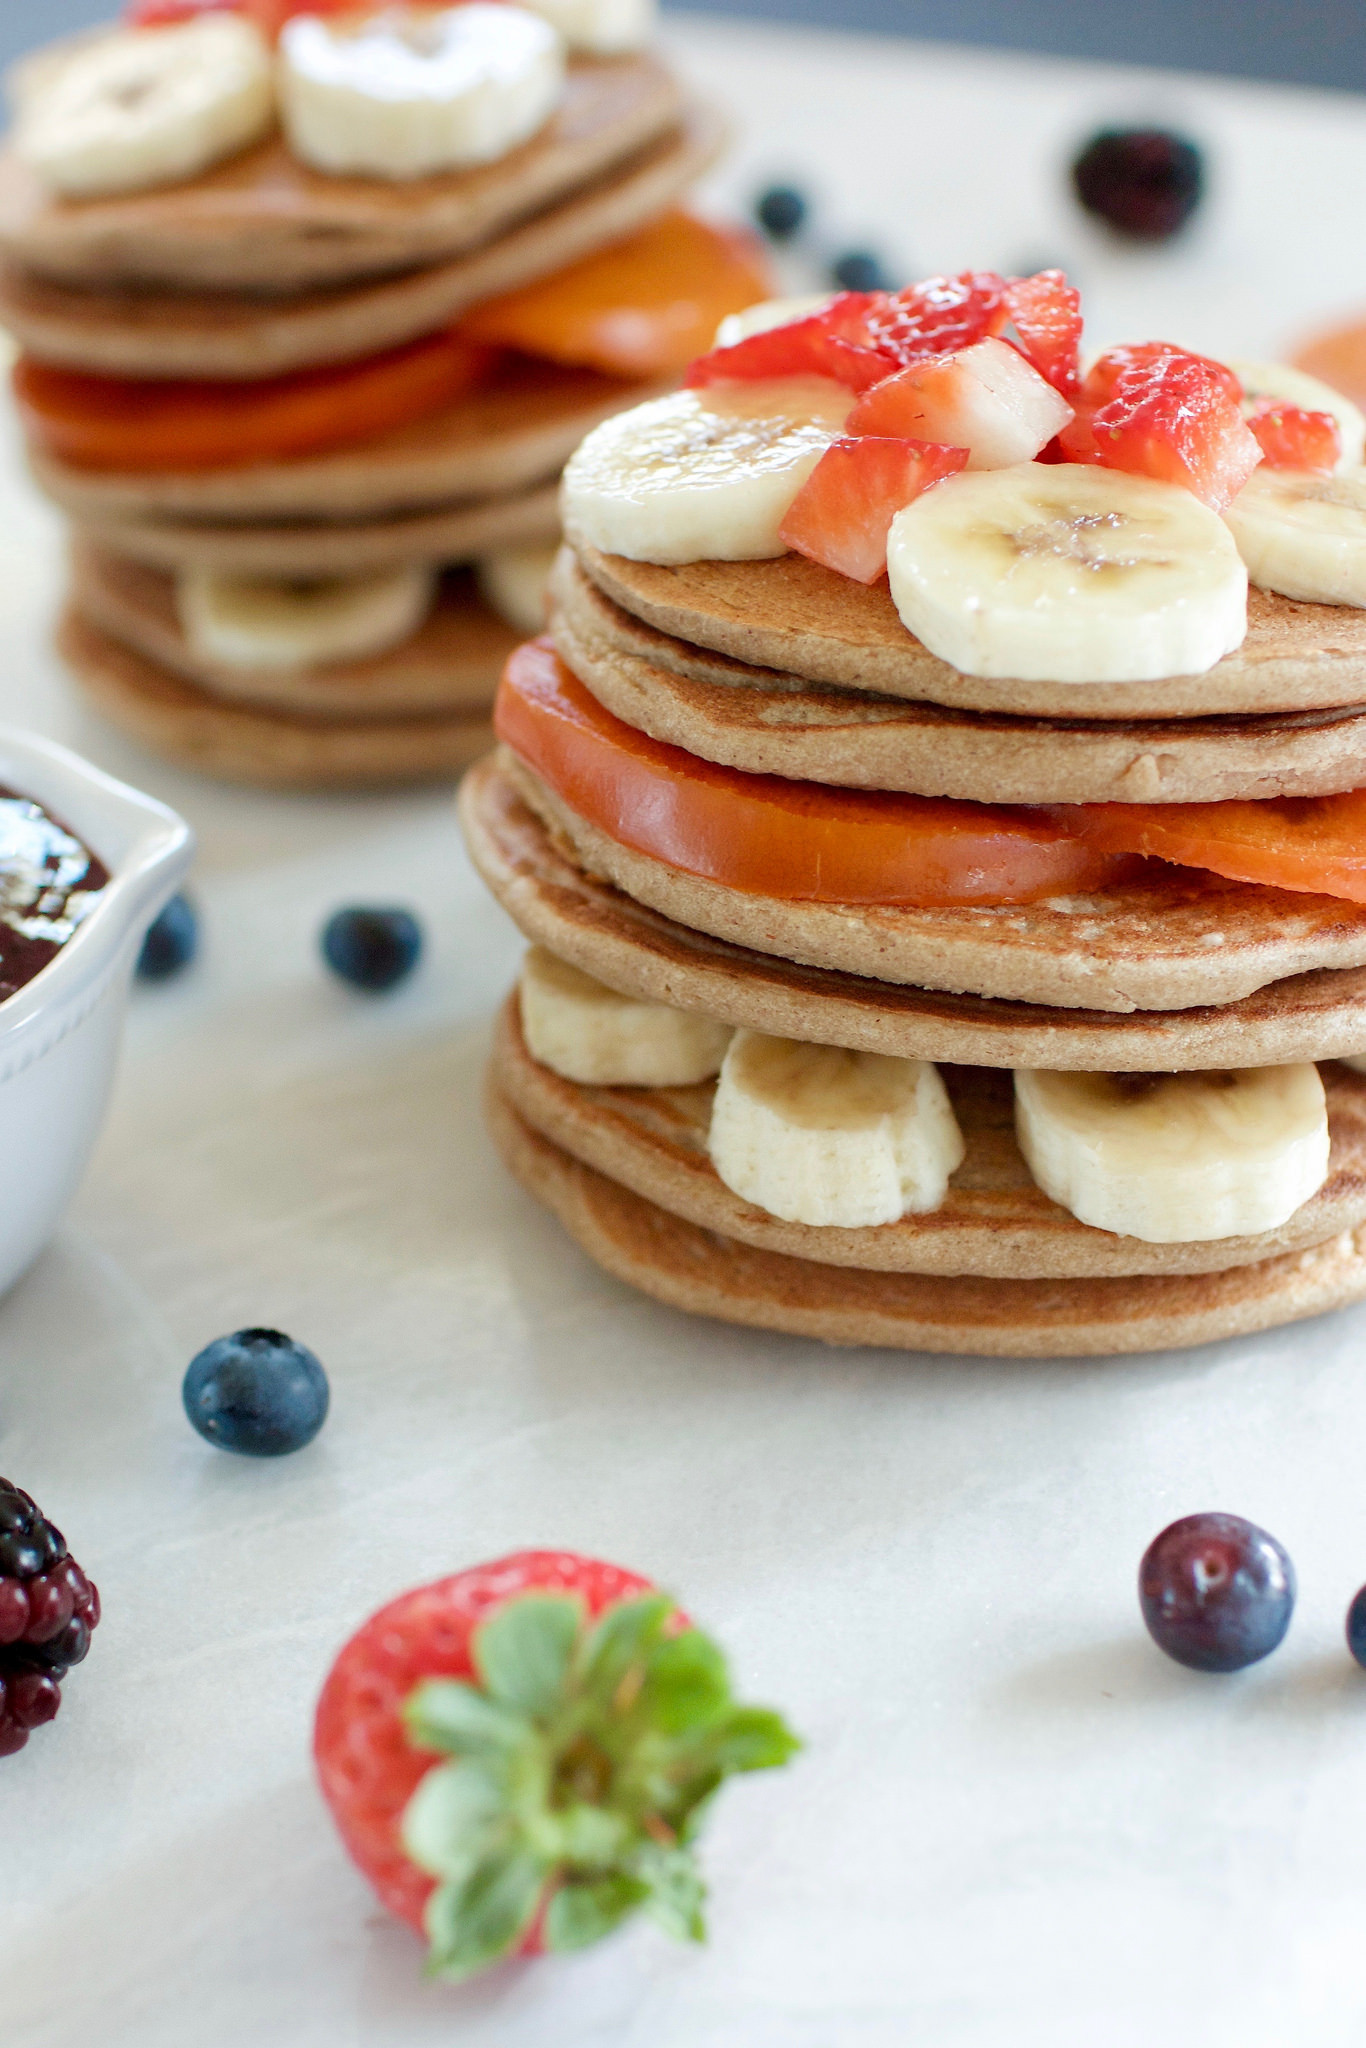 Healthy Vegan Pancakes 20 Best Ideas Healthy 3 Ingre Nt Vegan Pancakes Gluten &amp; Oil Free